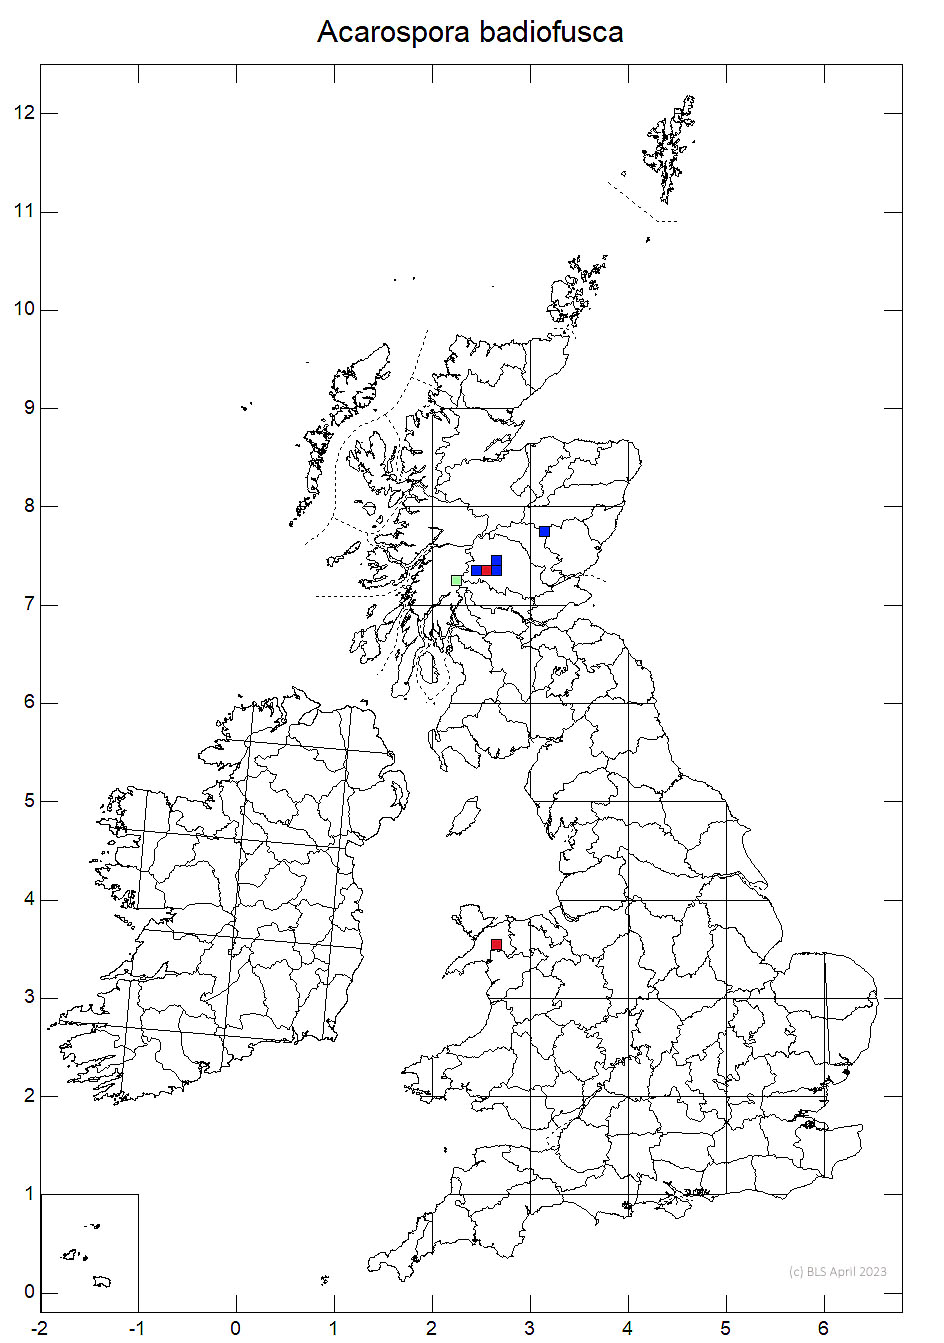 Acarospora badiofusca 10km sq distribution map